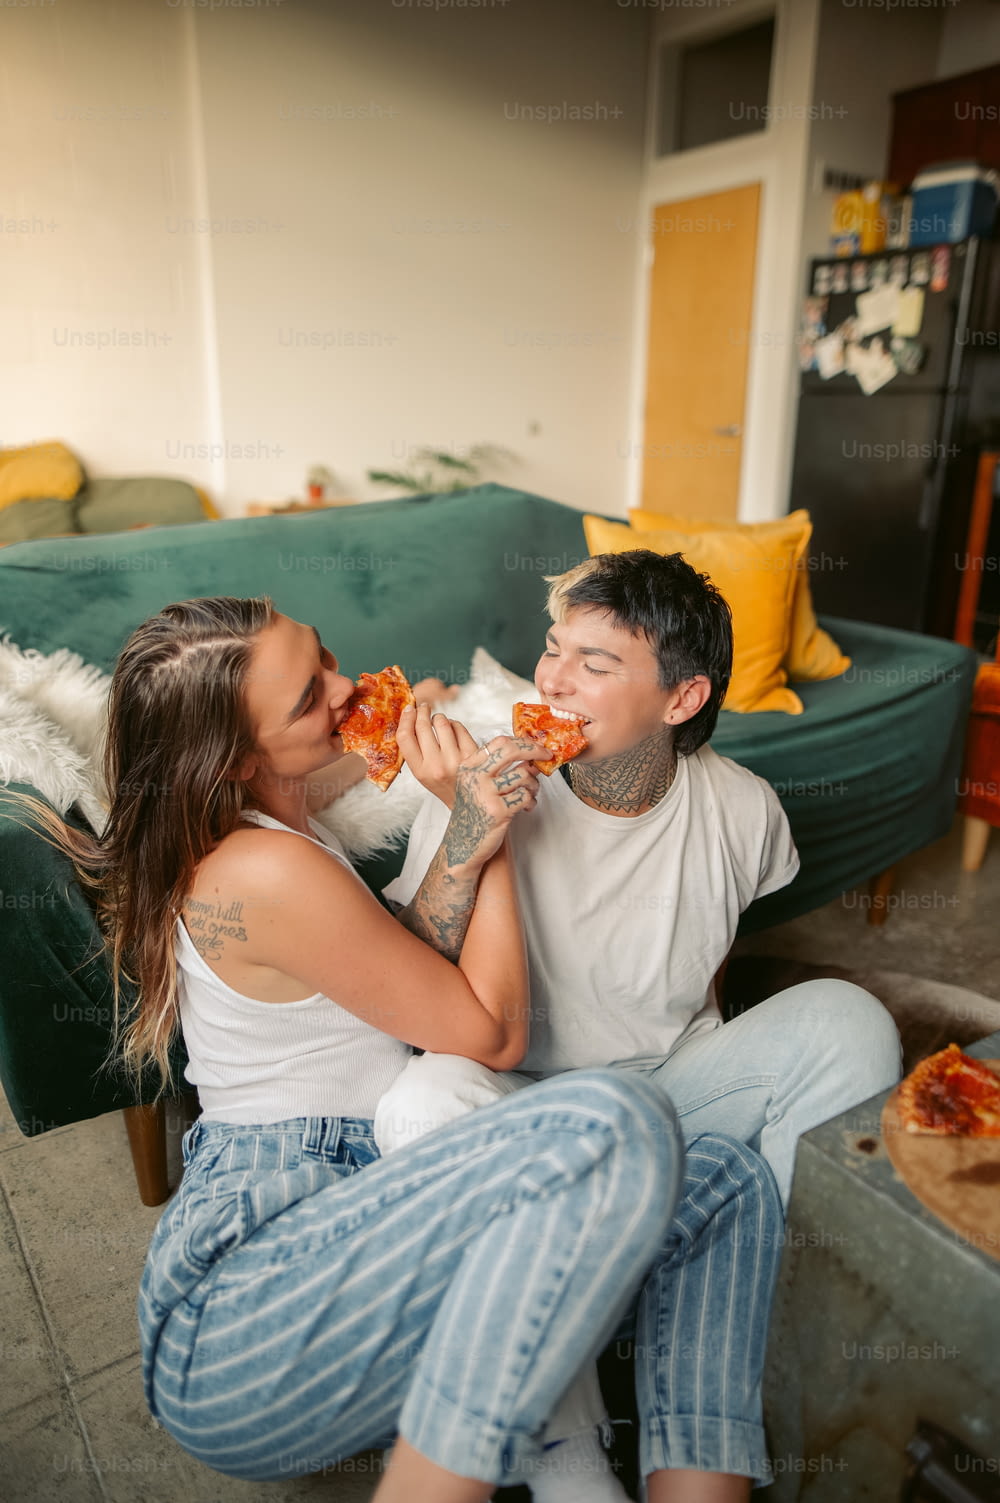 Un uomo e una donna seduti su un divano che mangiano pizza